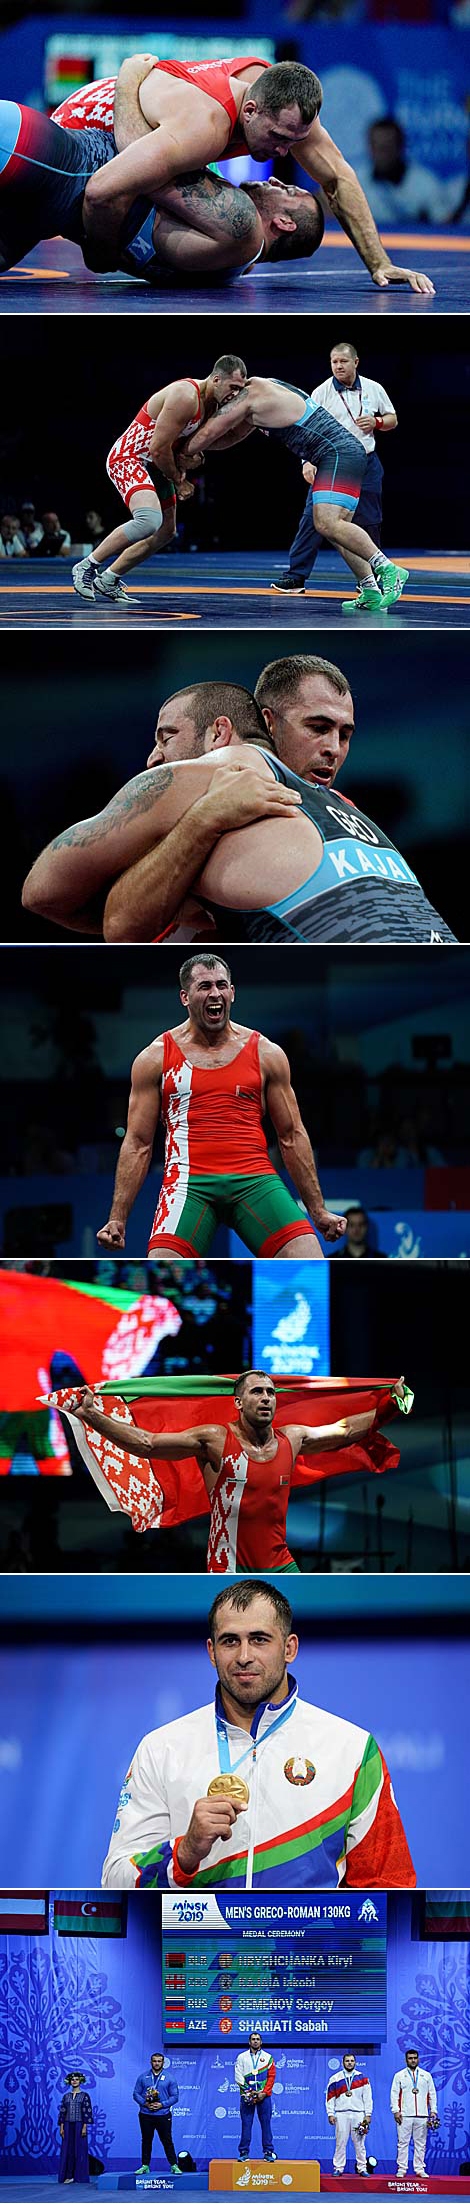 Belarus' wrestler Kiryl Hryshchanka triumphant at 2nd European Games